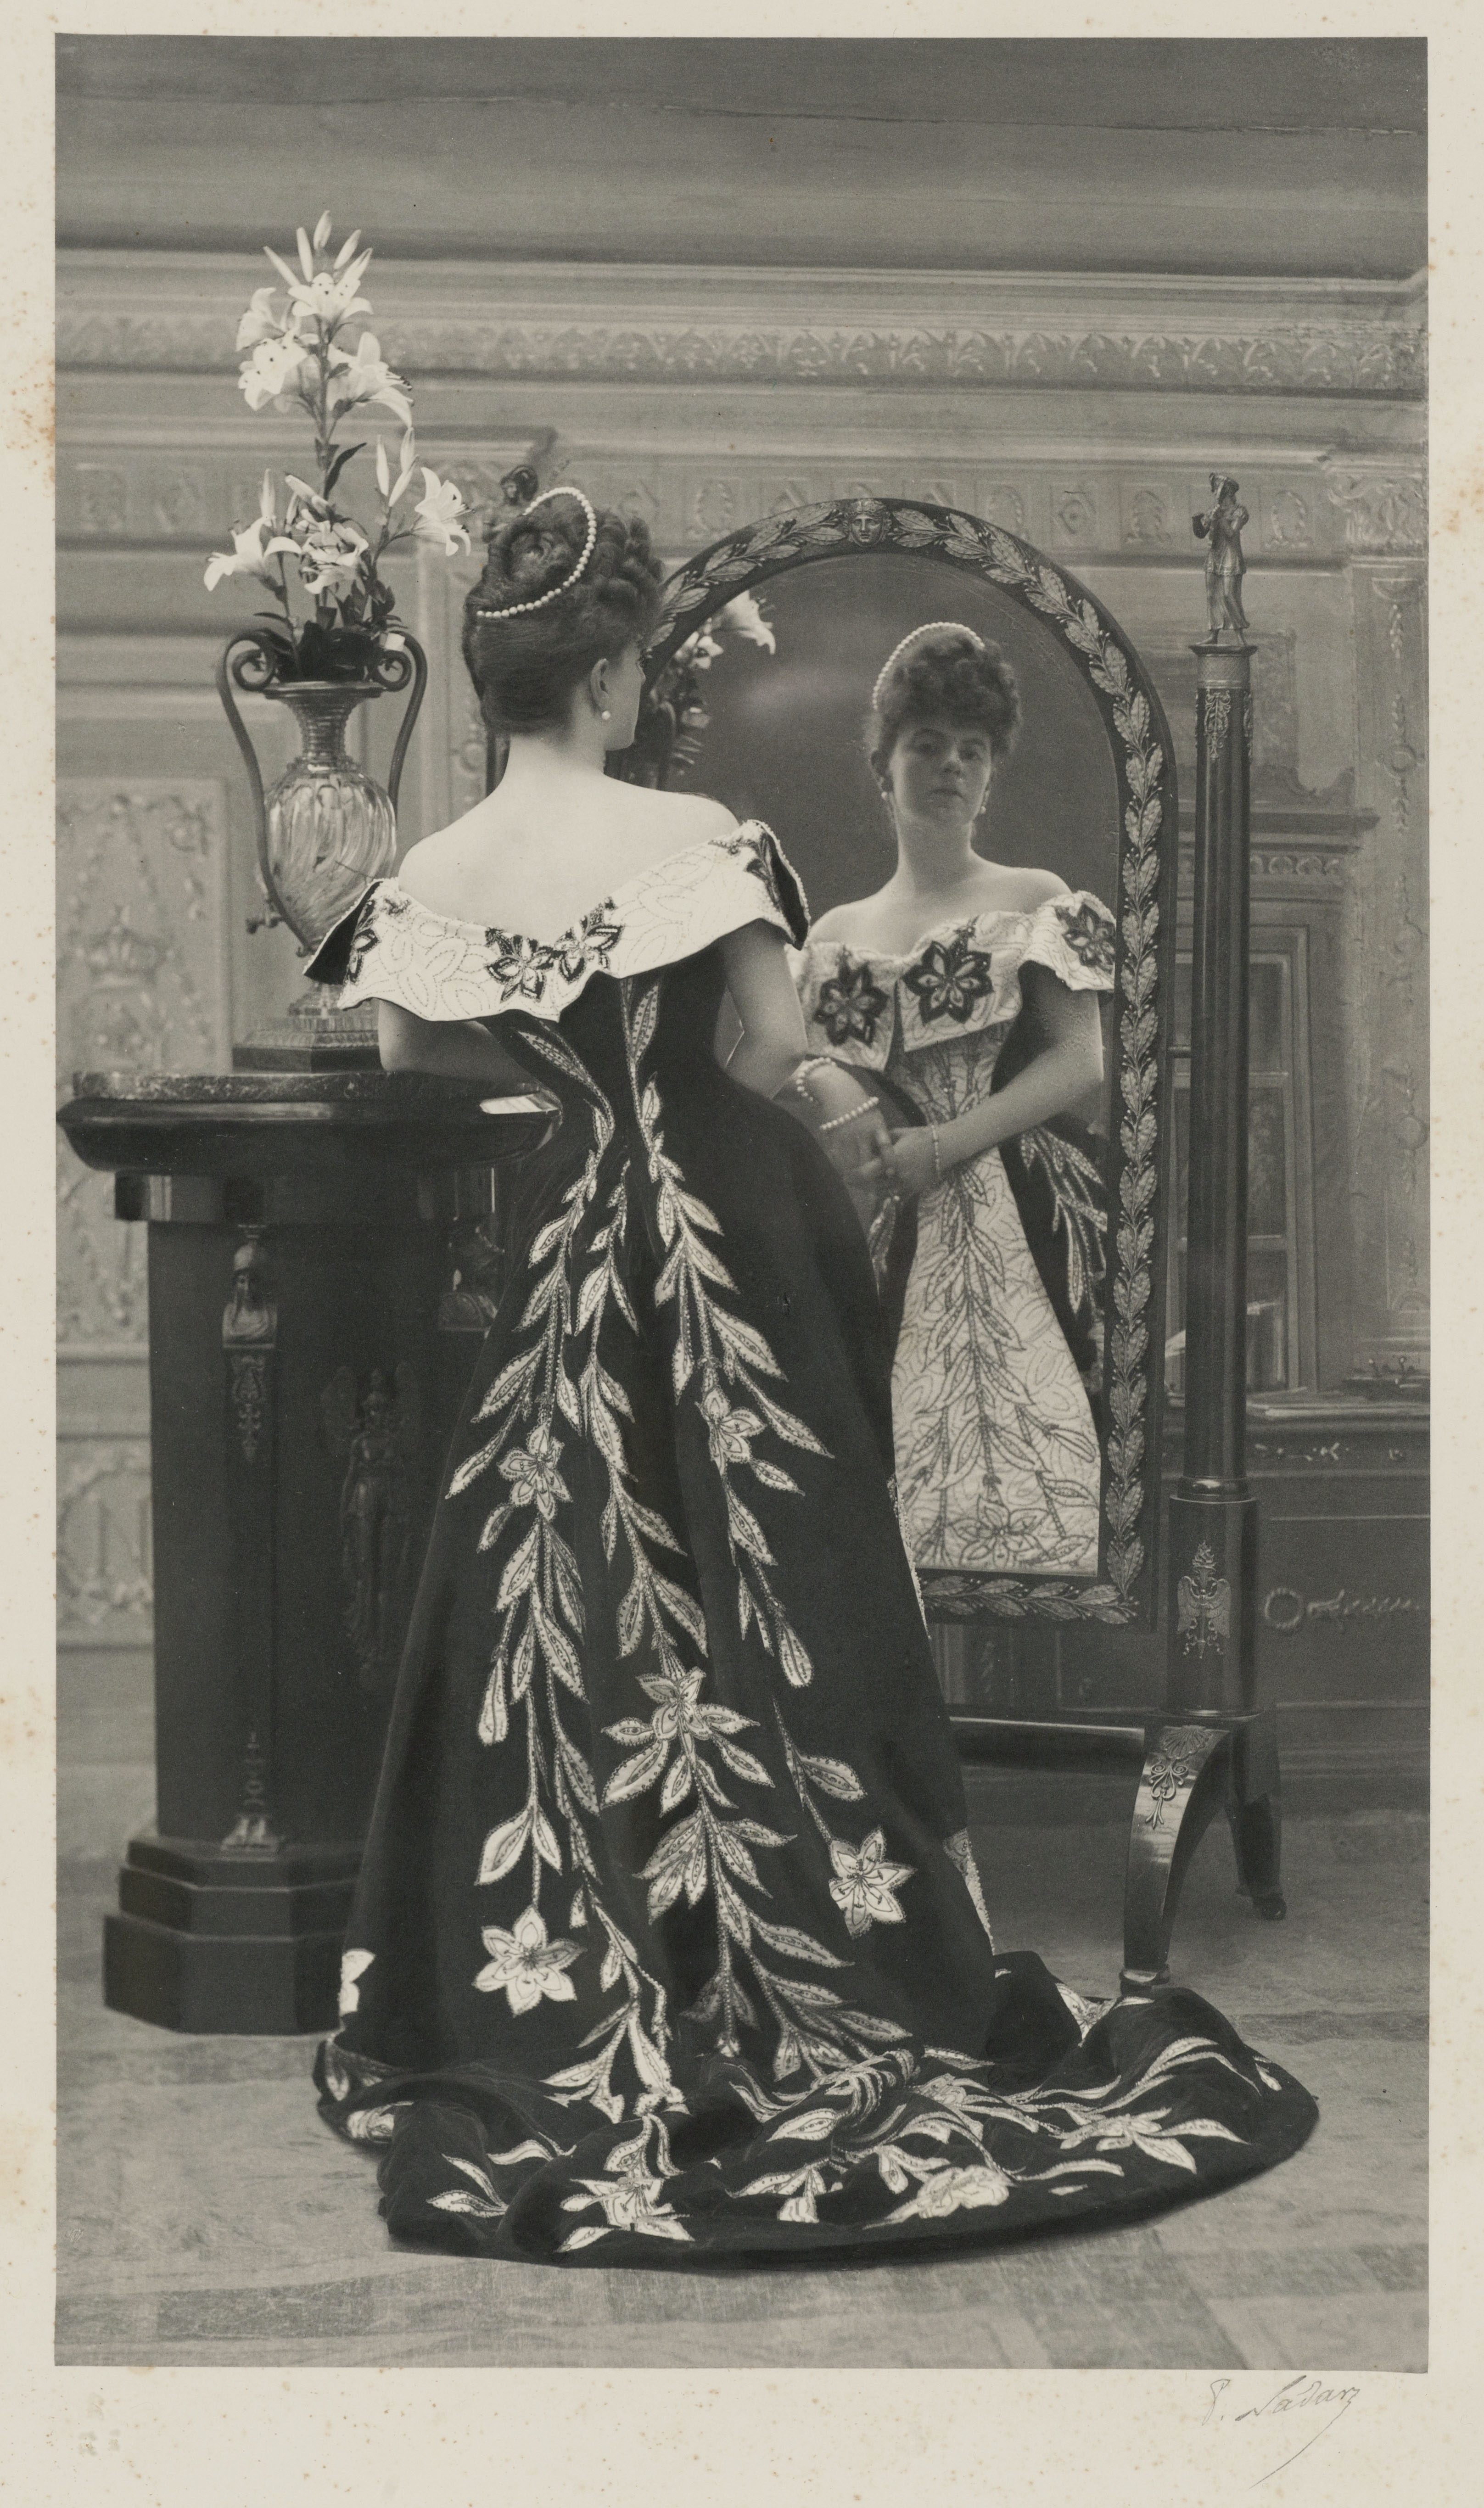 La comtesse Greffulhe, née Elisabeth de Caraman-Chimay (1860-1952), portant la robe aux lis créée pour elle par la maison Worth. Photographie de Paul Nadar (1856-1939). 1896. Galliera, musée de la Mode de la Ville de Paris. 